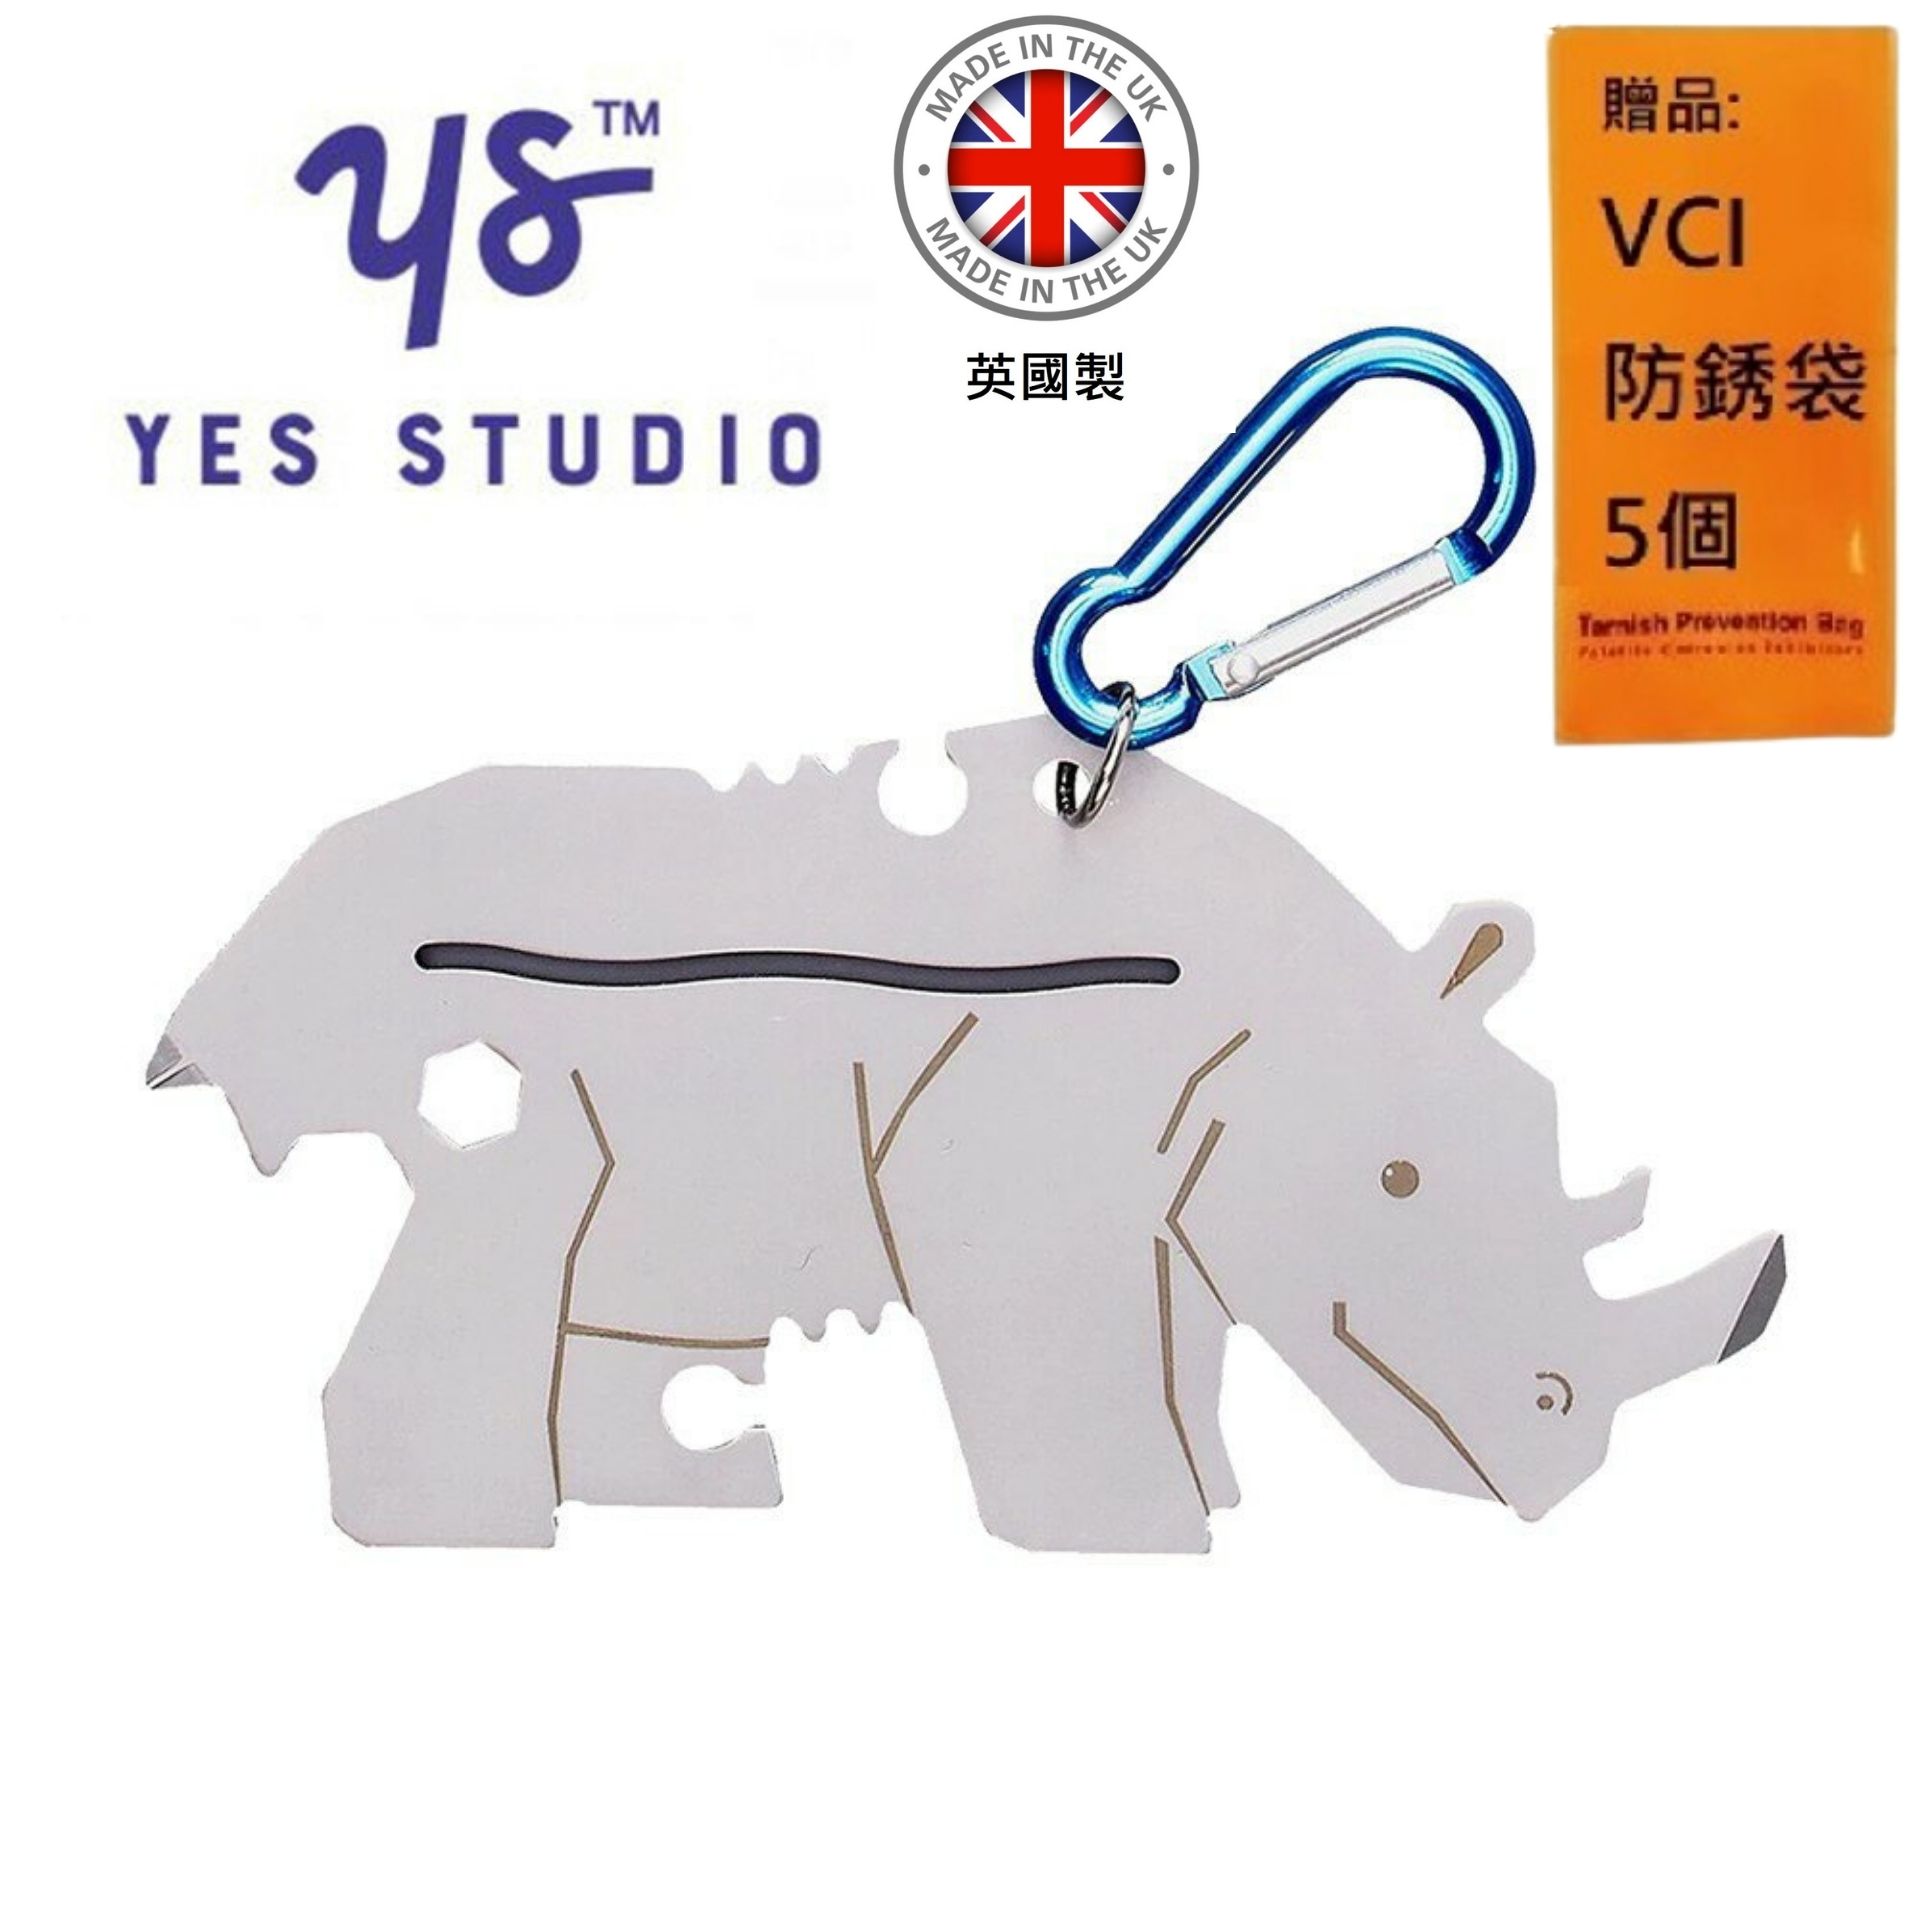 【YES STUDIO】7合1黑犀牛造型隨身工具卡 超酷的黑犀牛造型工具卡